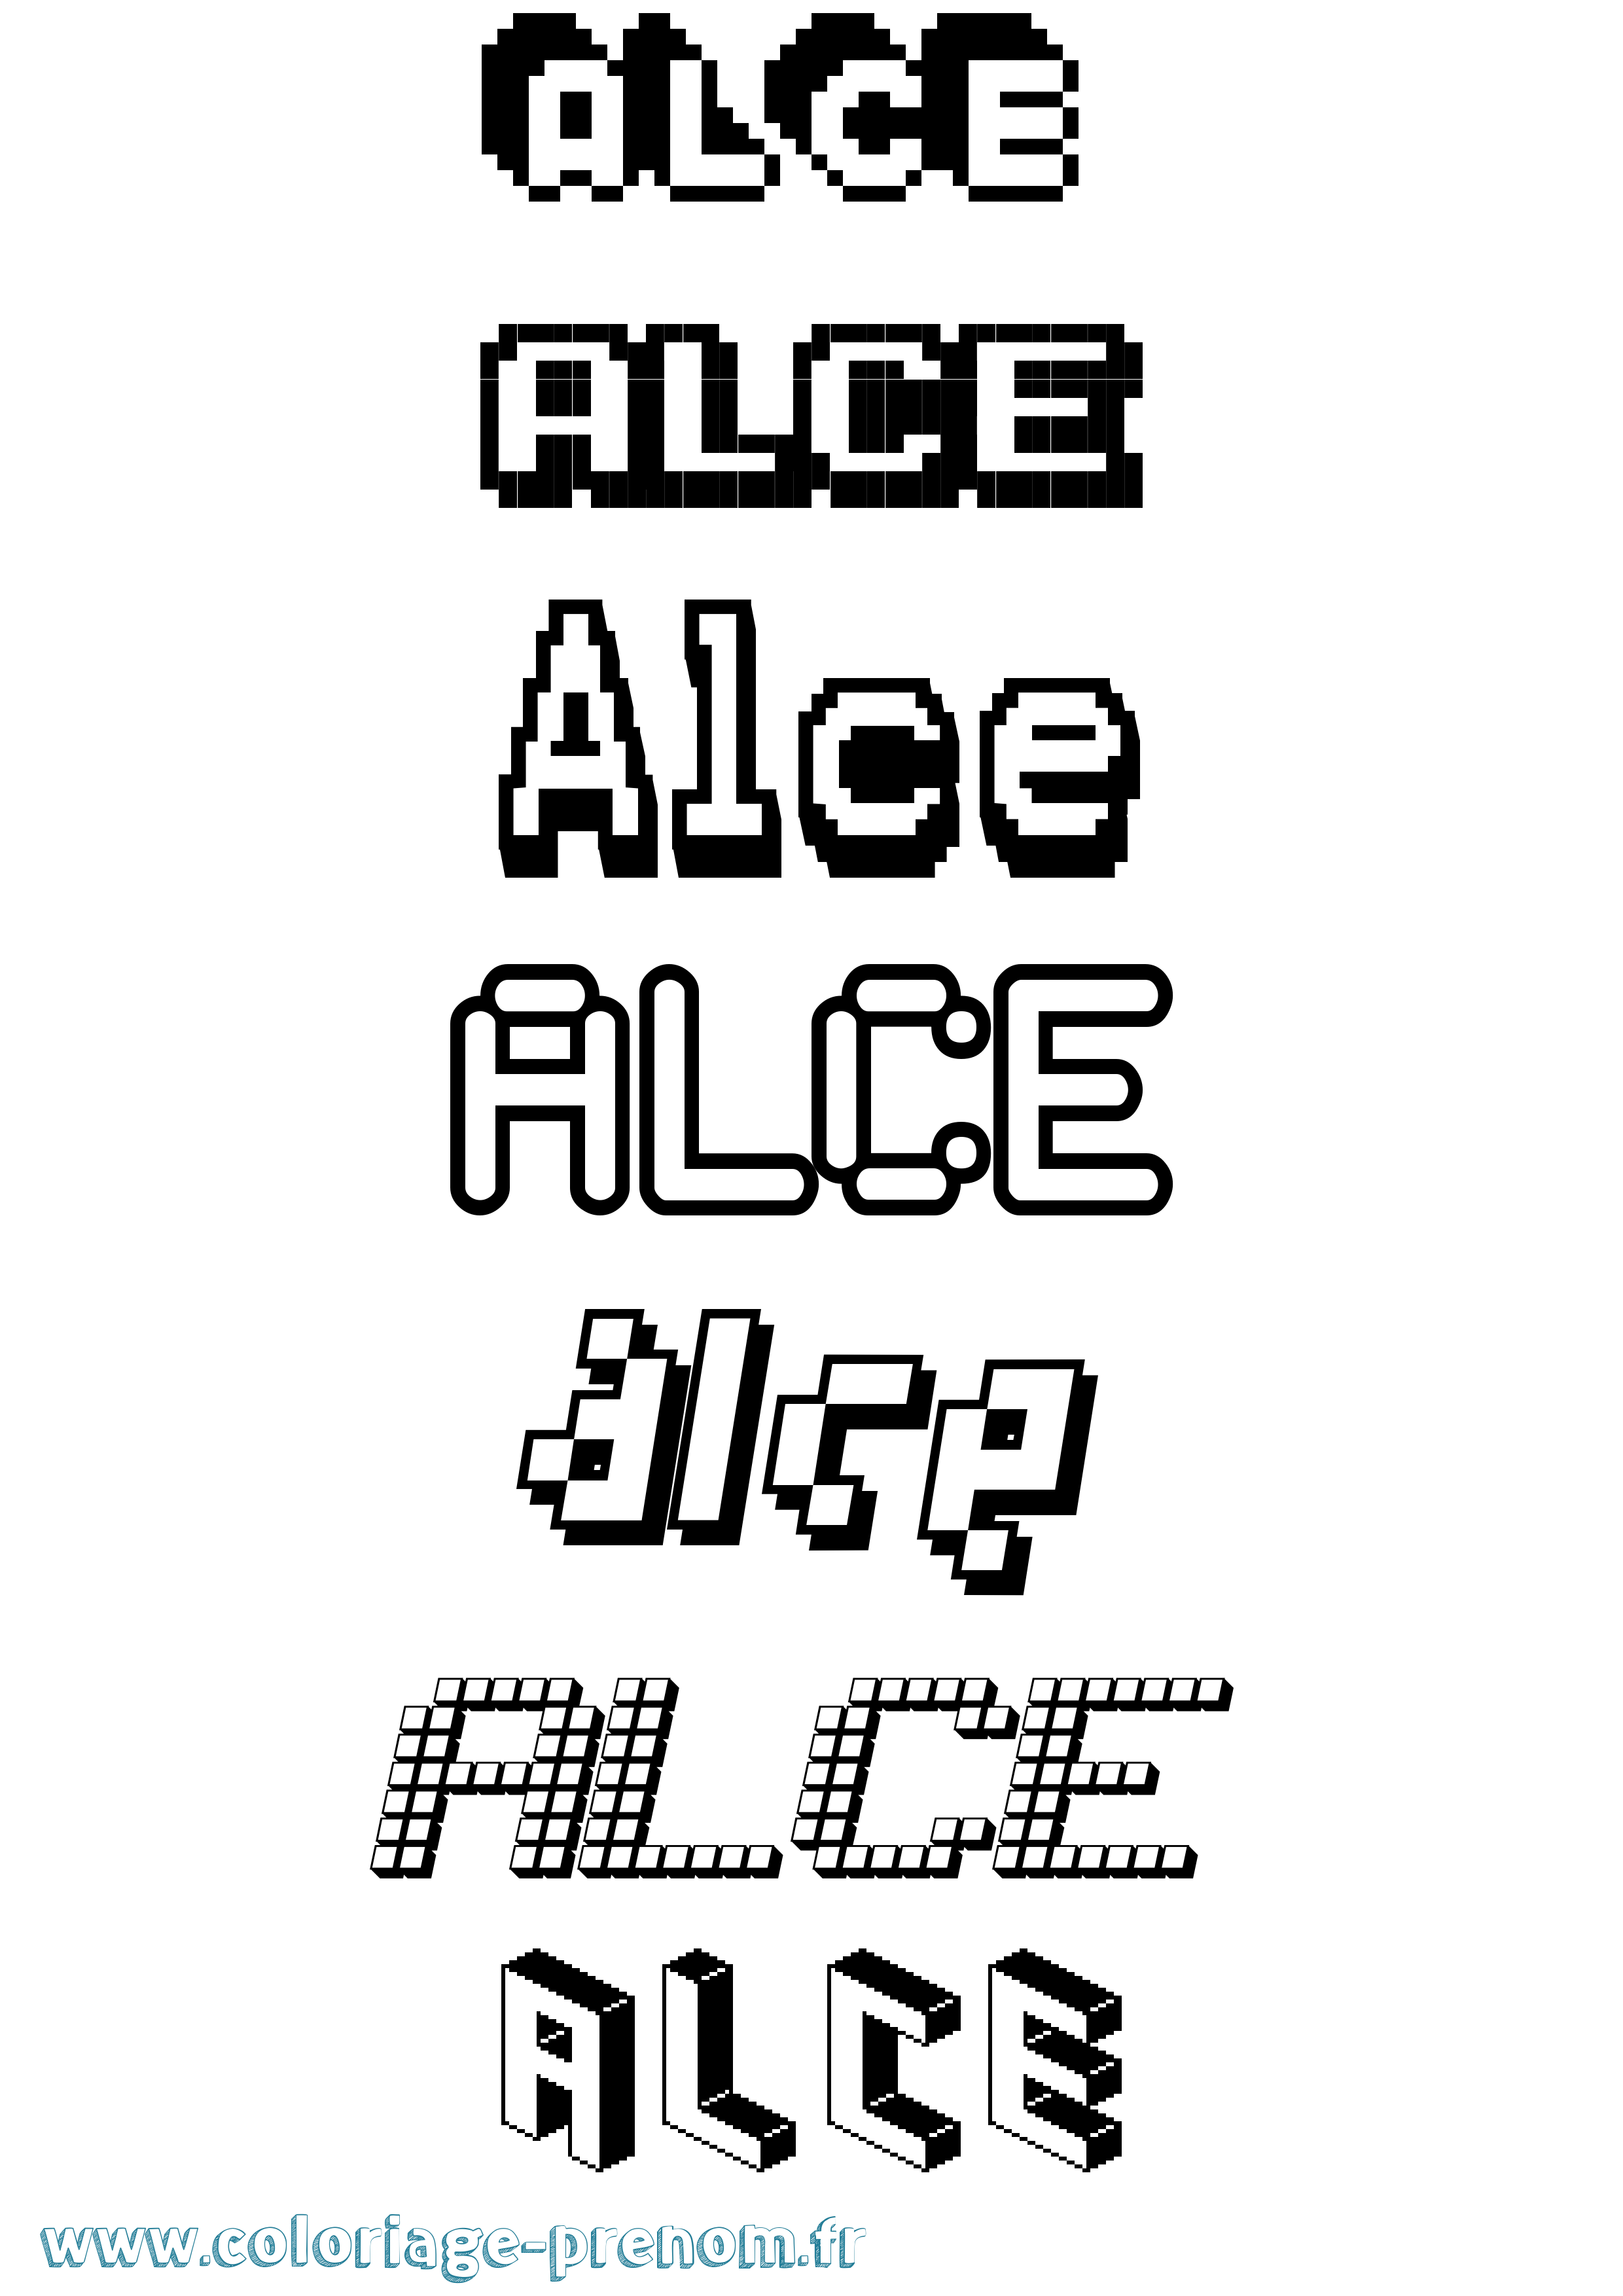 Coloriage prénom Alce Pixel